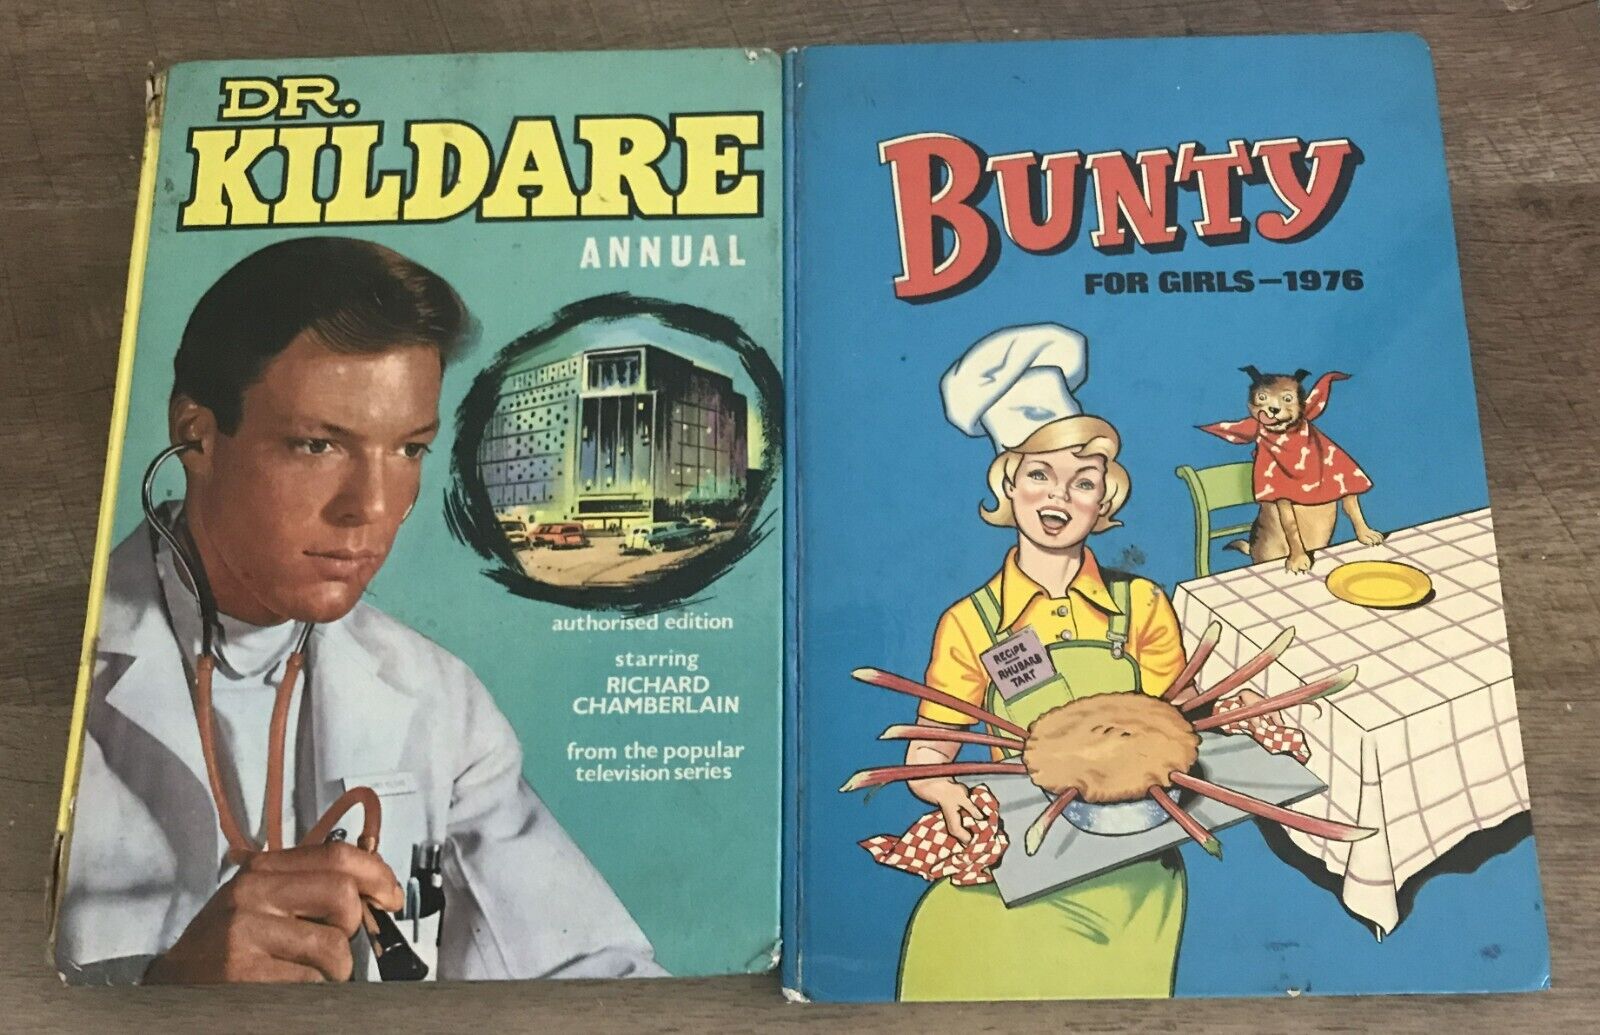 DR. KILDARE DELL COMICS UK 1963 ANNUAL & BUNTY FOR GIRLS 1976 HC COMICS BOOK